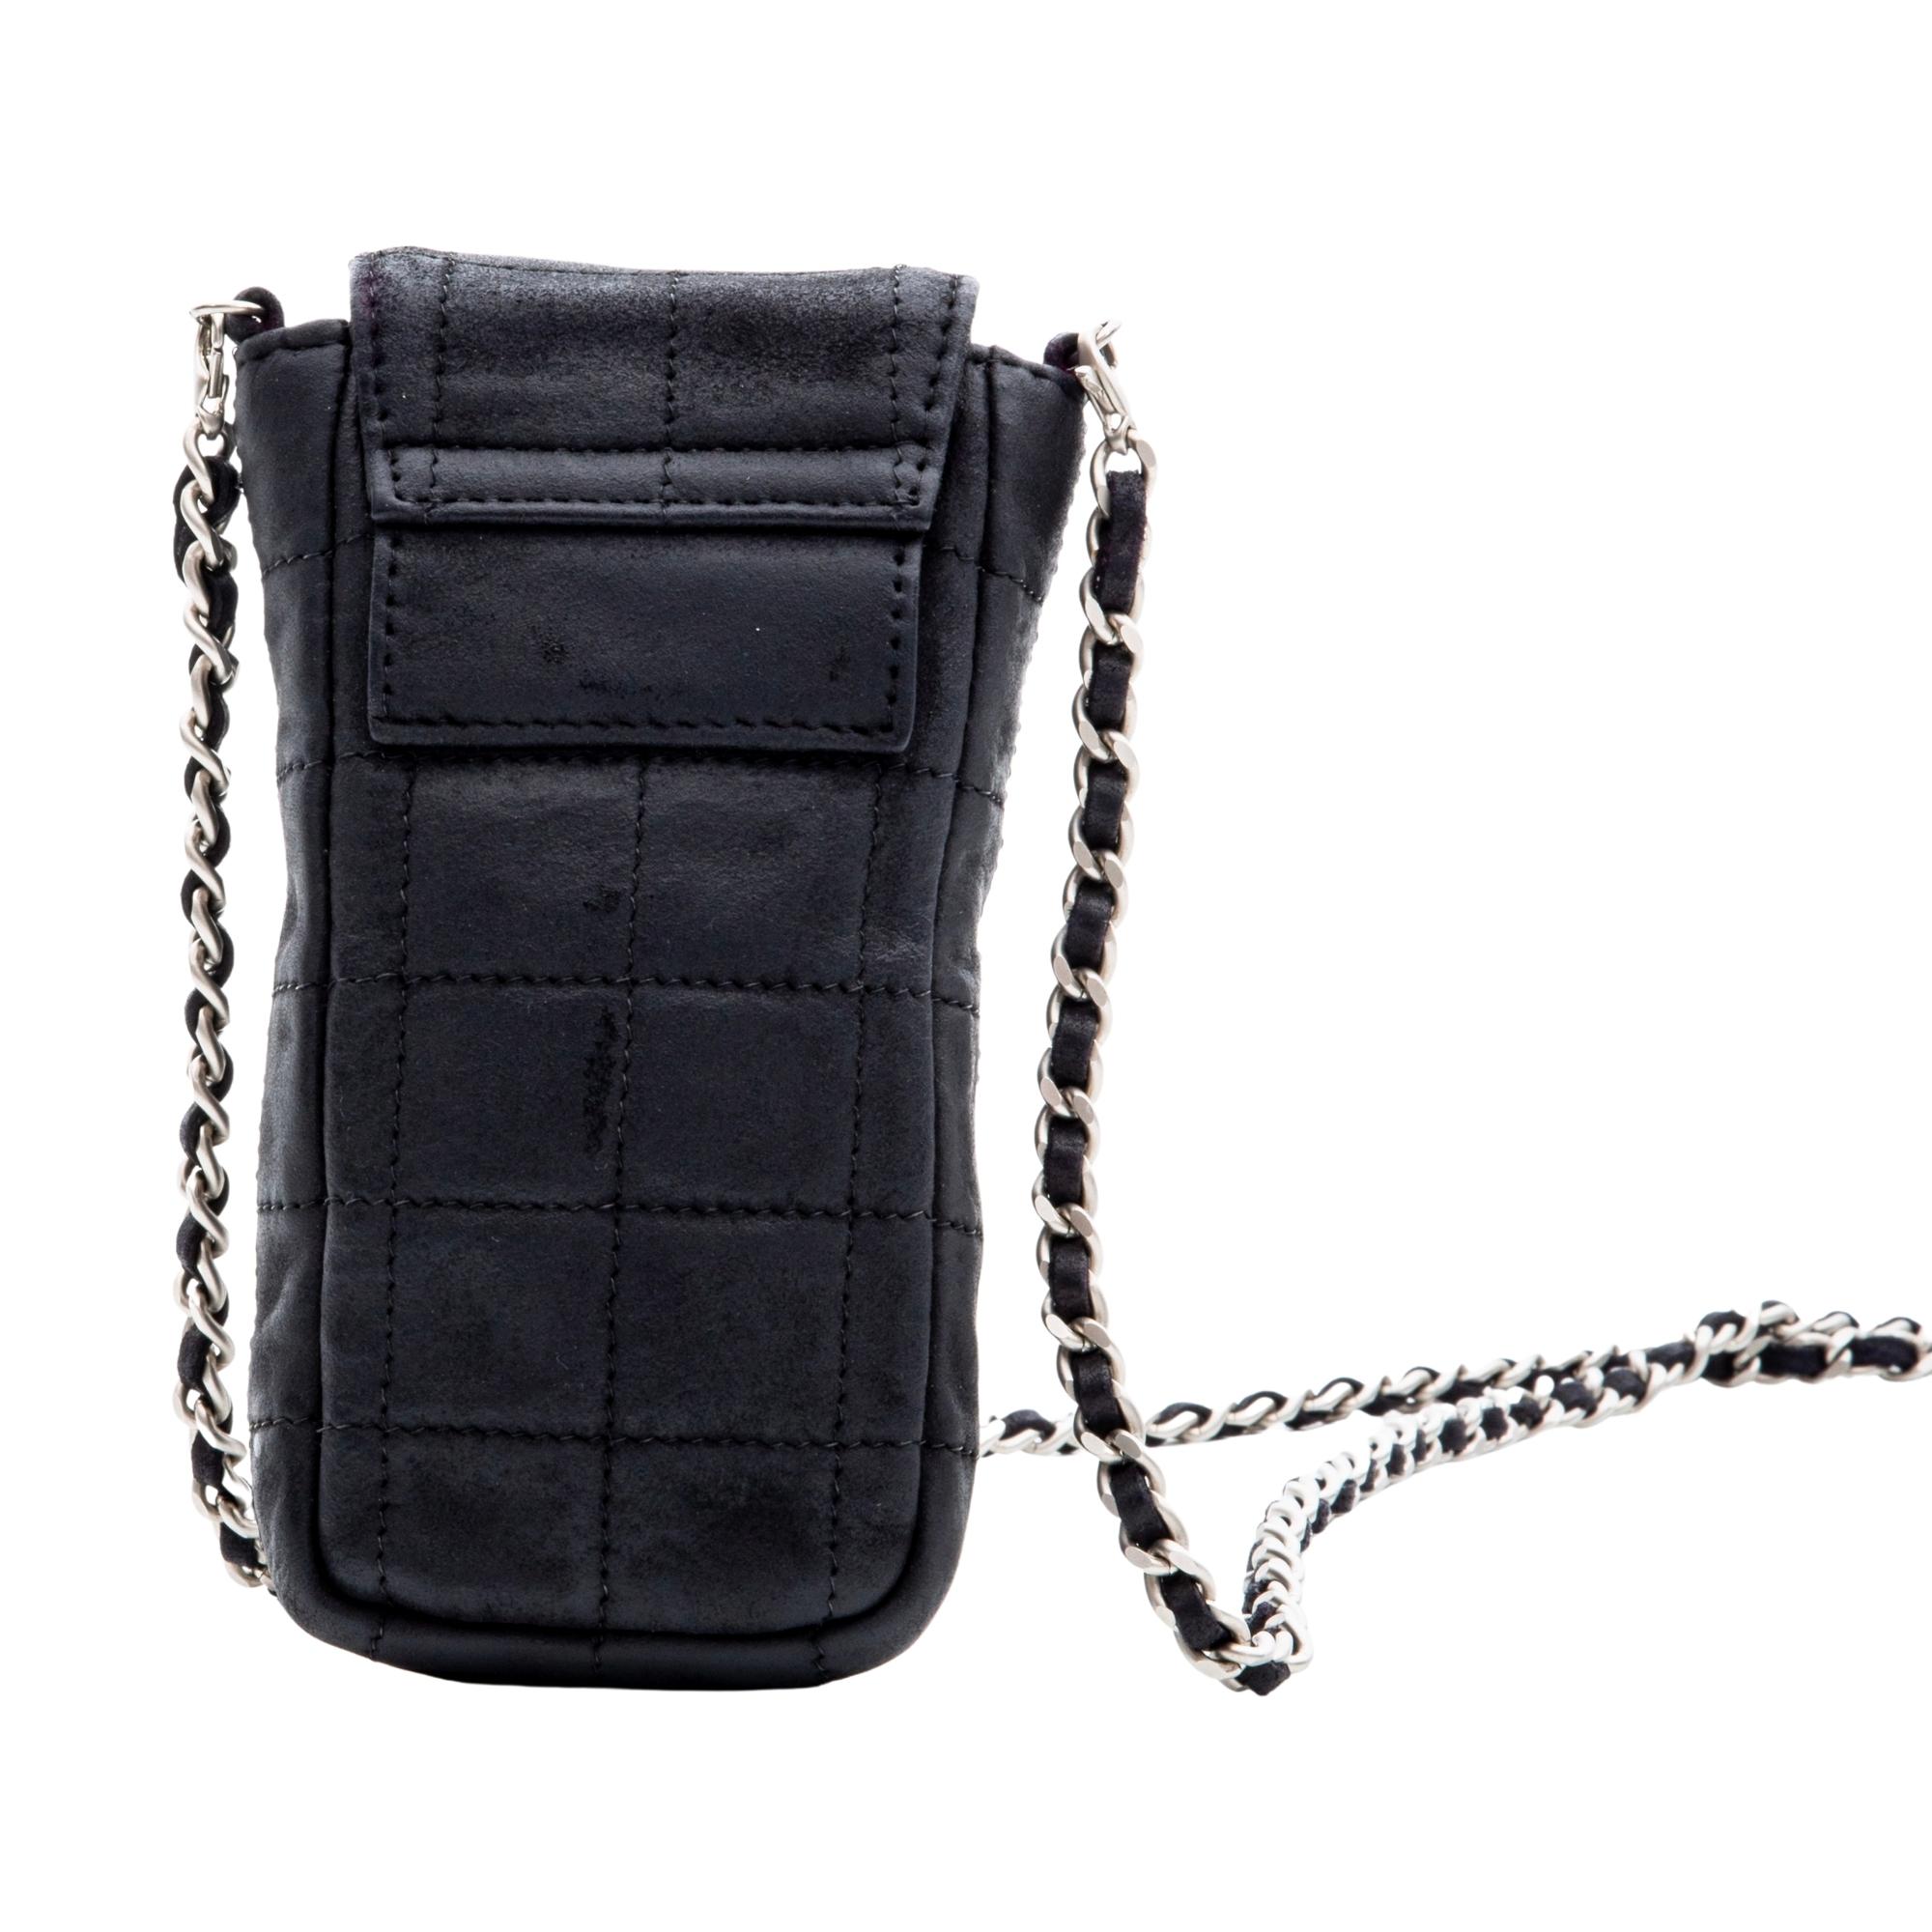 Les sacs Chanel portant le code 6XXXXXX ont été fabriqués entre 2000 et 2002.

COULEUR : Noir
MATERIAL : Suède
CODE DE L'ÉLÉMENT : 6114846
MESURES : H 6